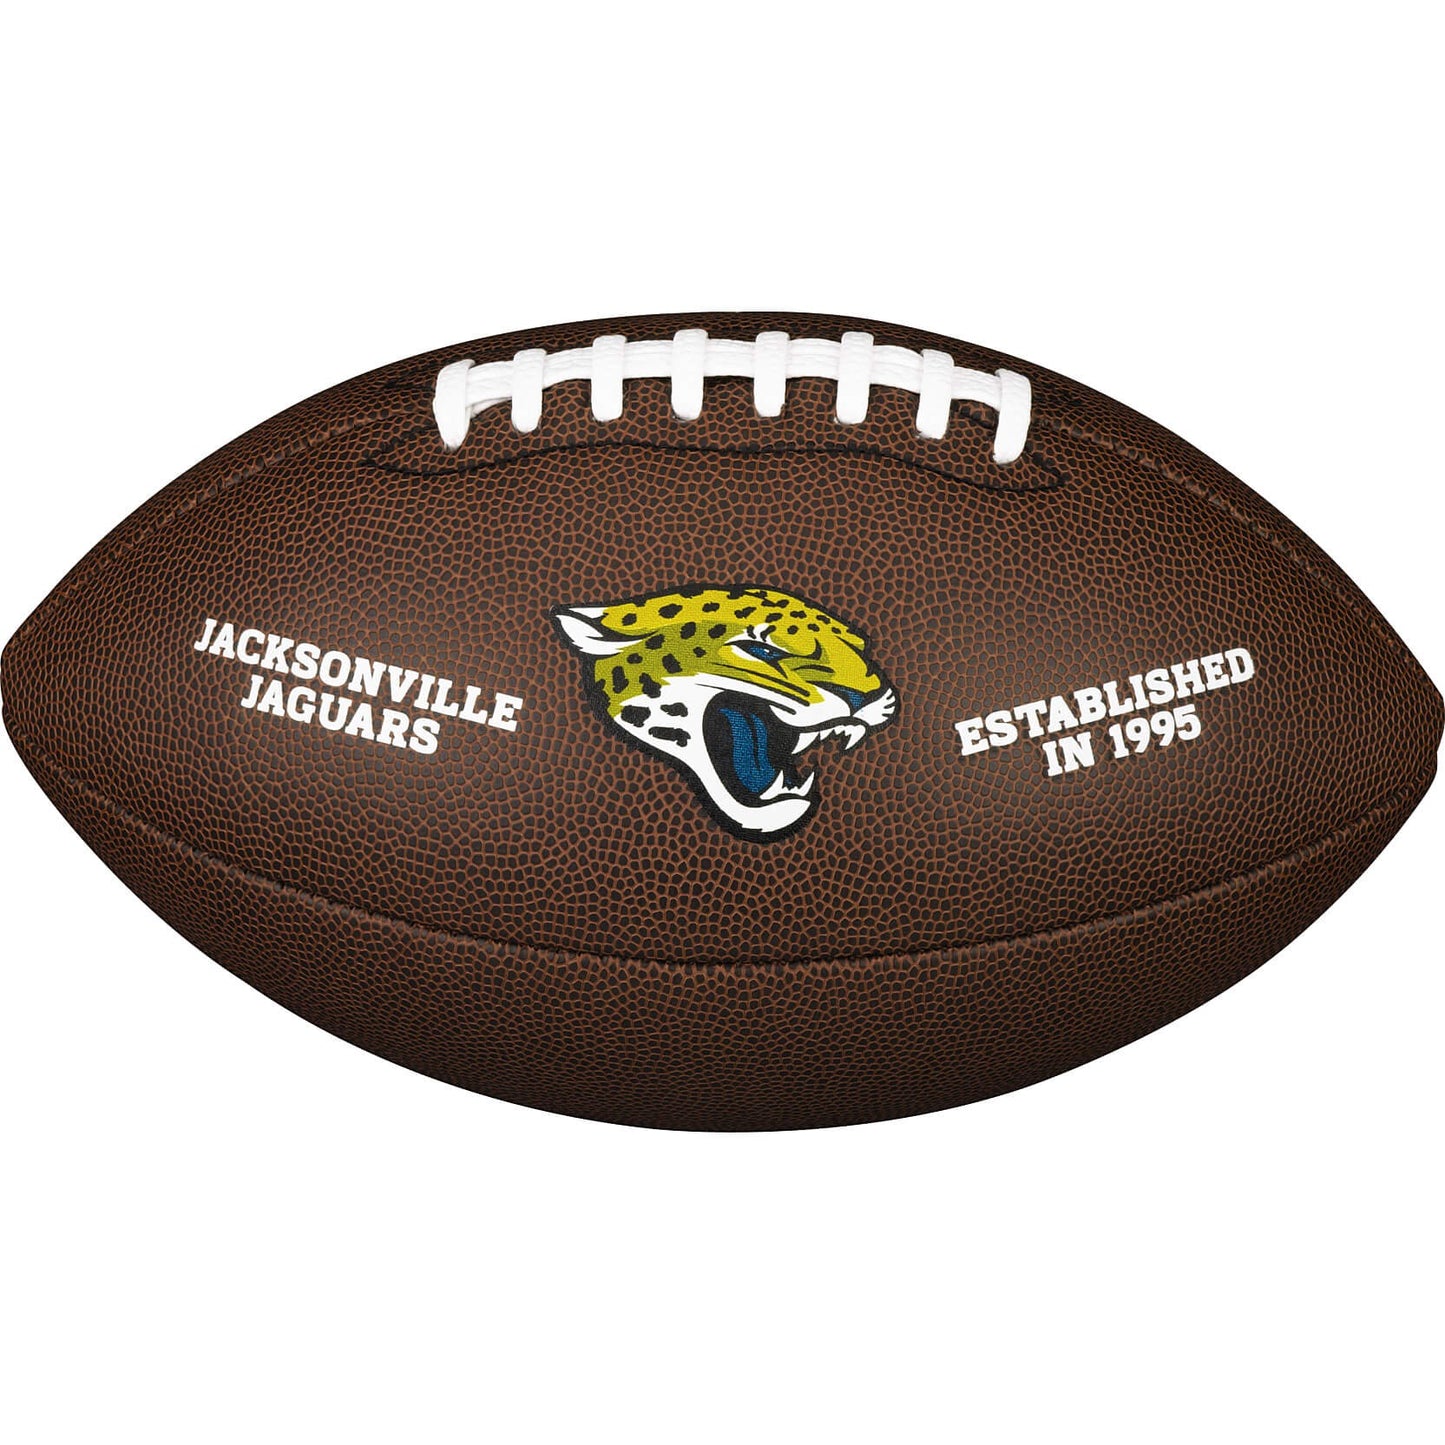 WILSON NFL LICENSED BALL Jacksonville Jaguars